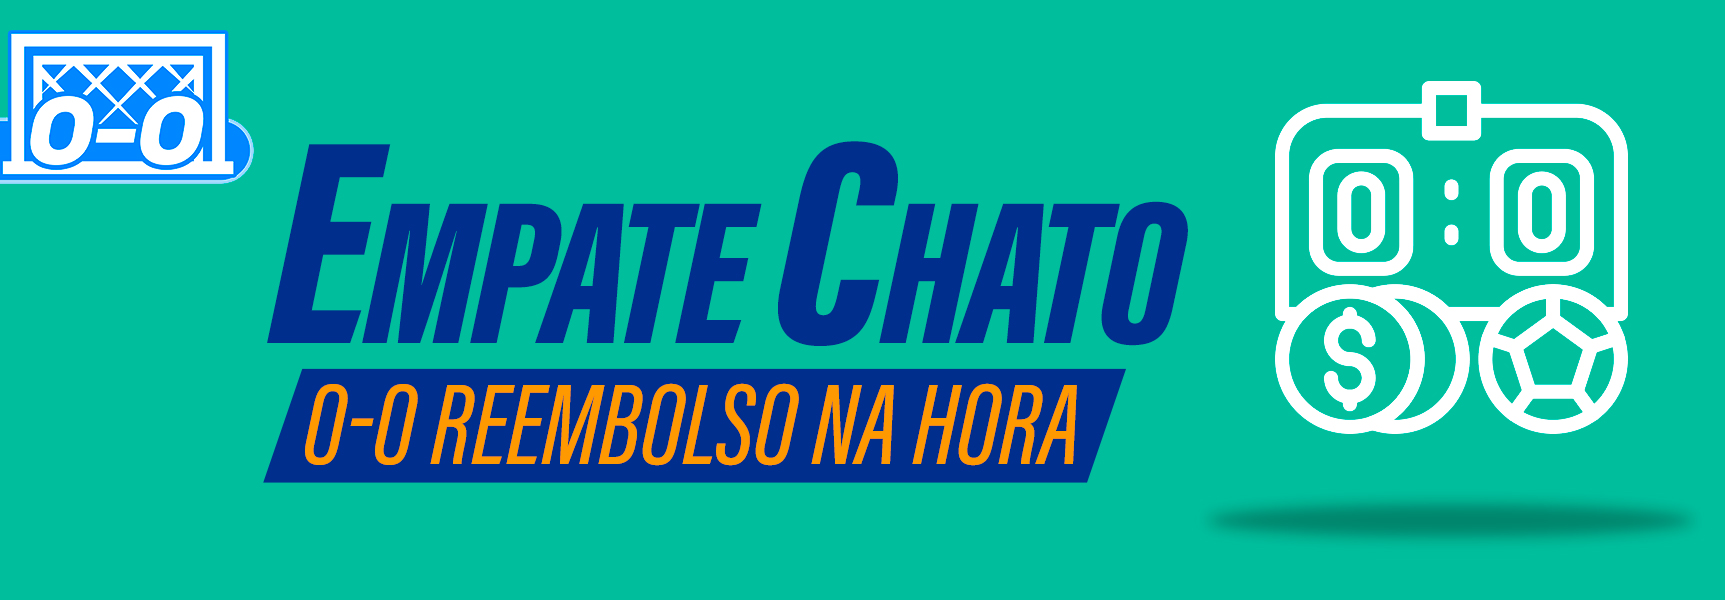 EMPATE CHATO